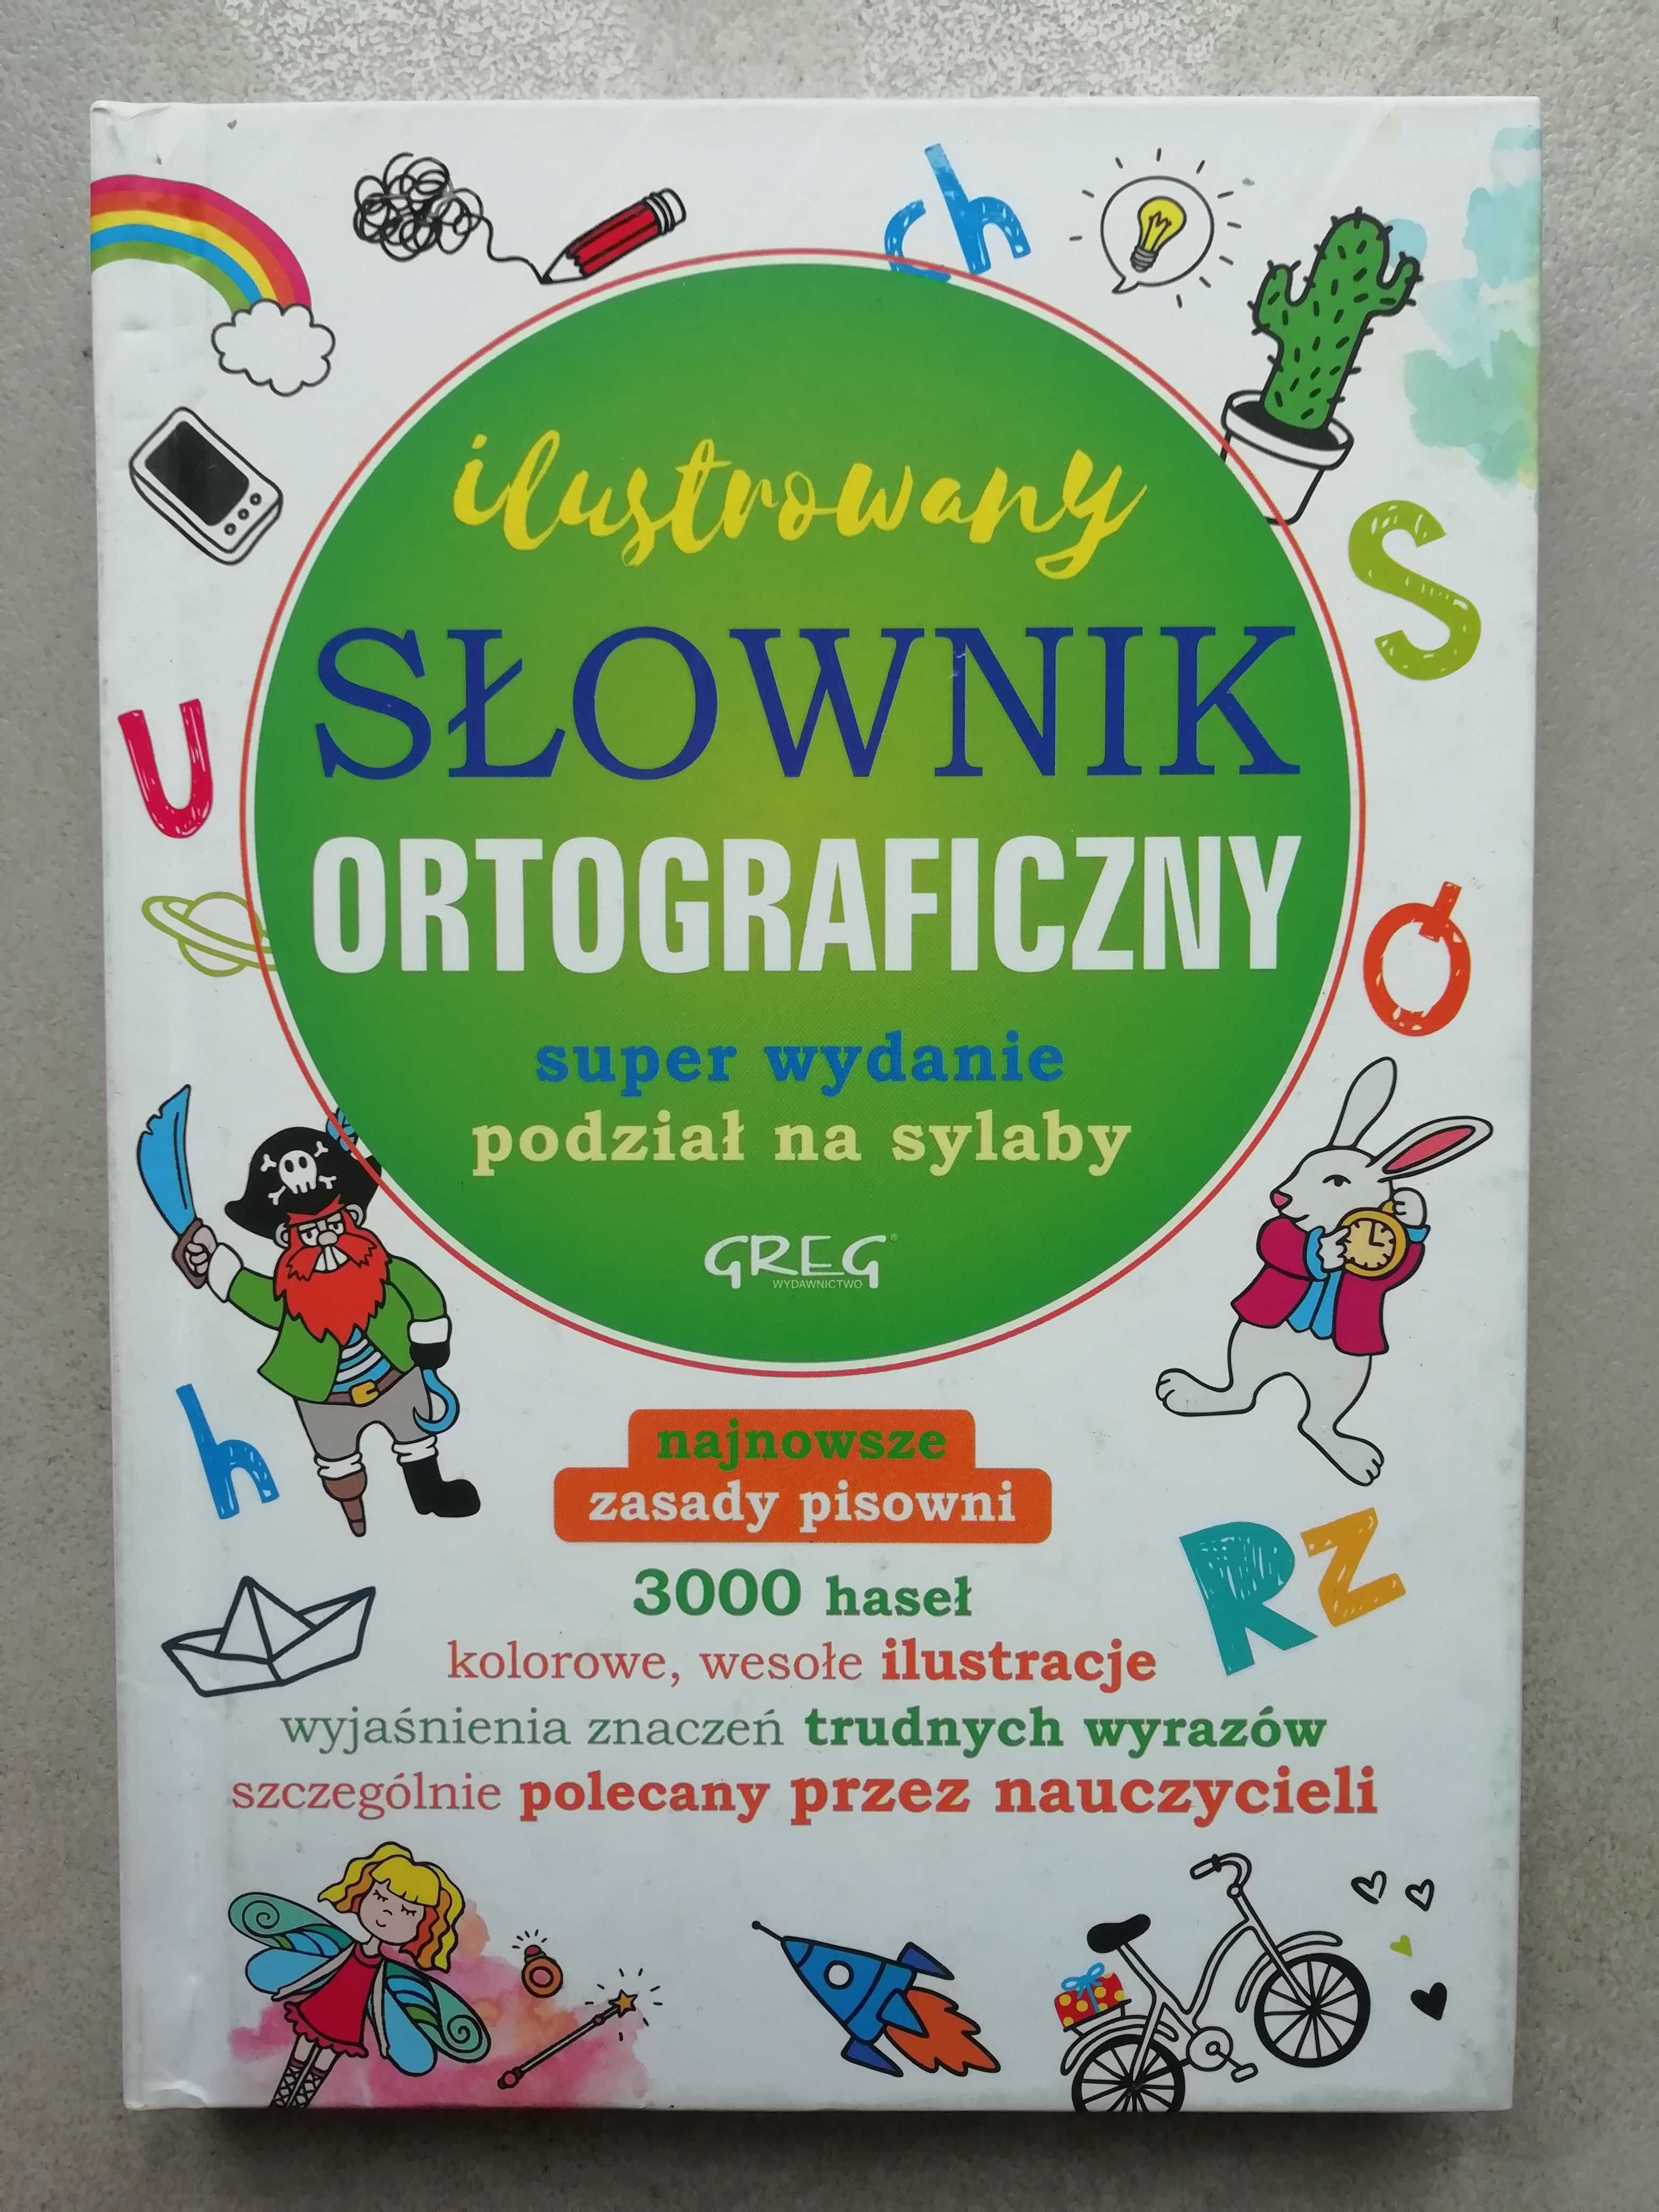 Słownik ortograficzny, ilustrowany.